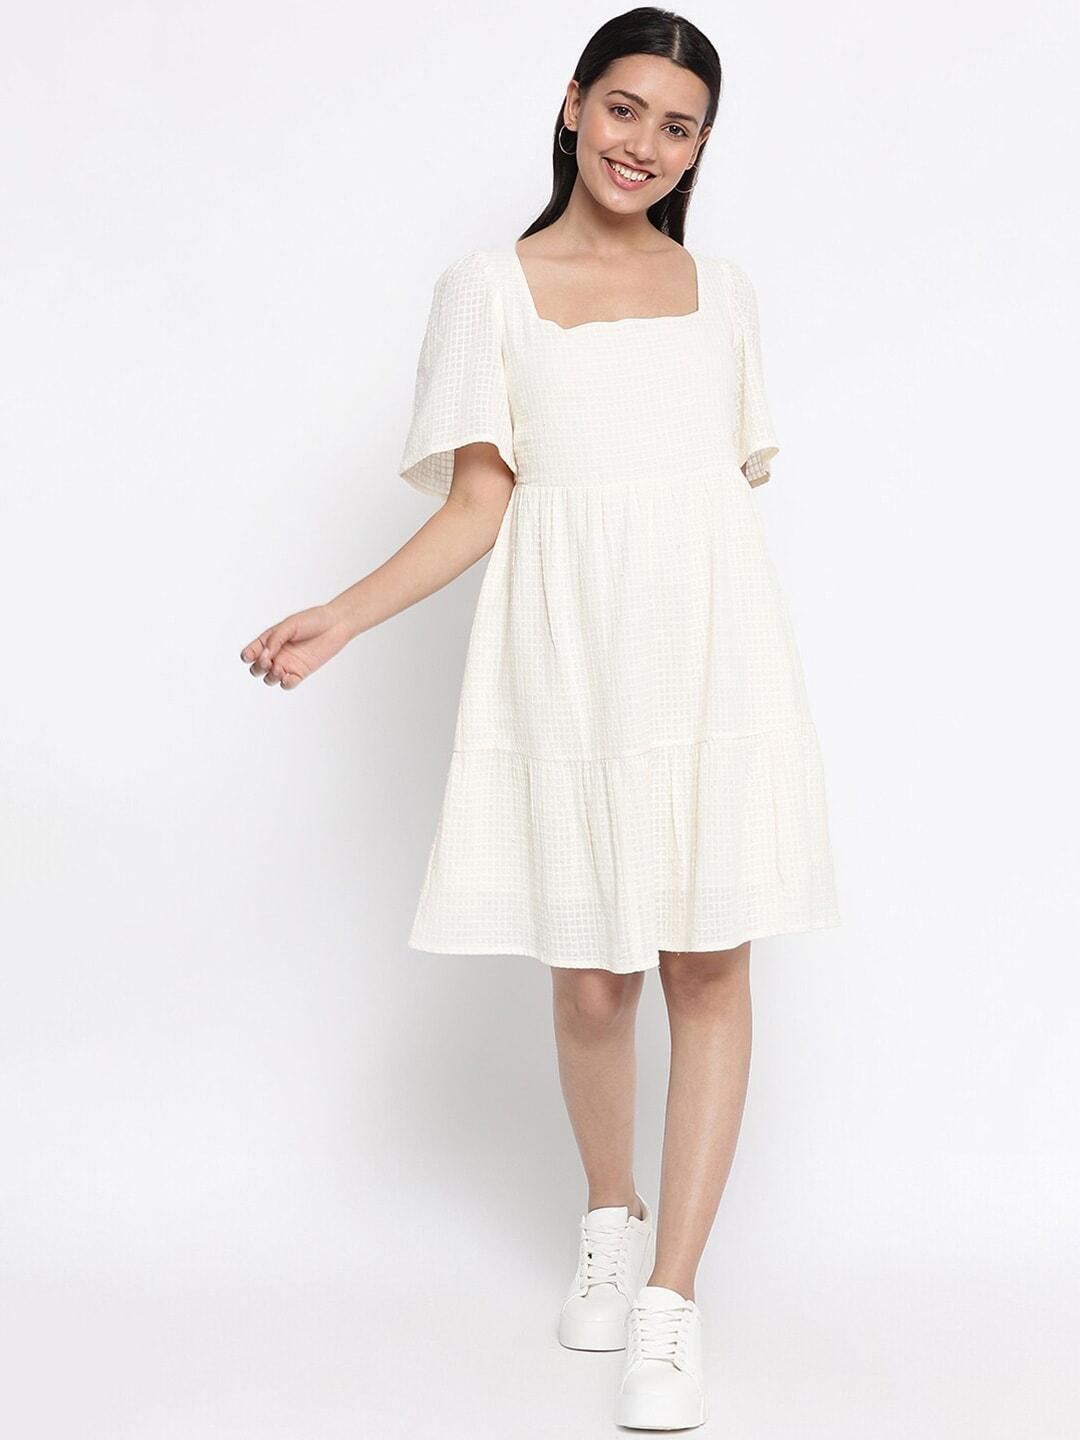 fabindia-white-cotton-dress